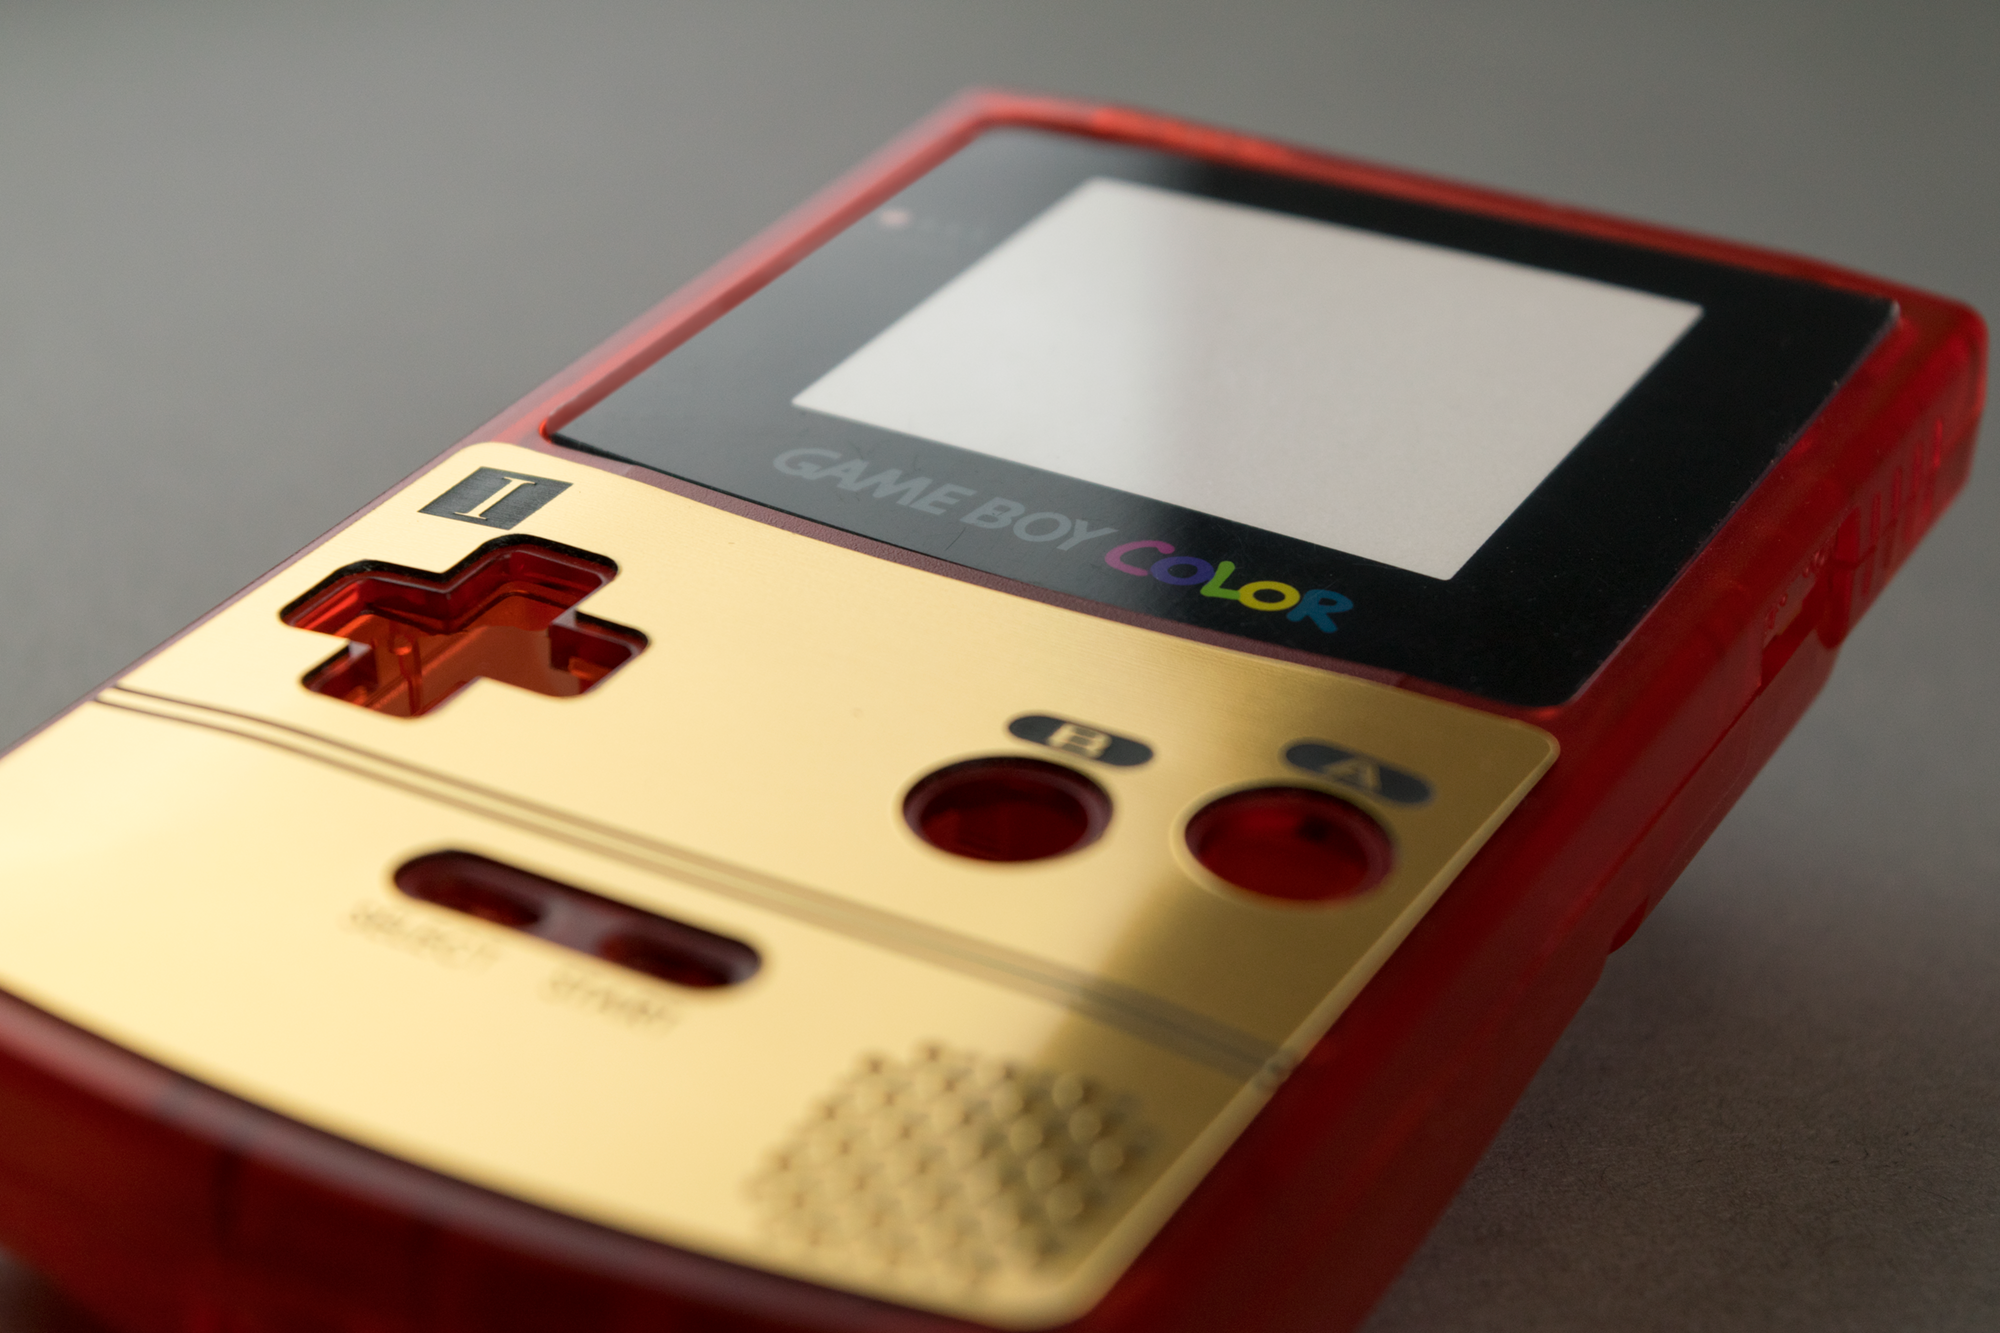 Nintendo GameCube + Game Boy Player Wood Veneer – Rose Colored Gaming